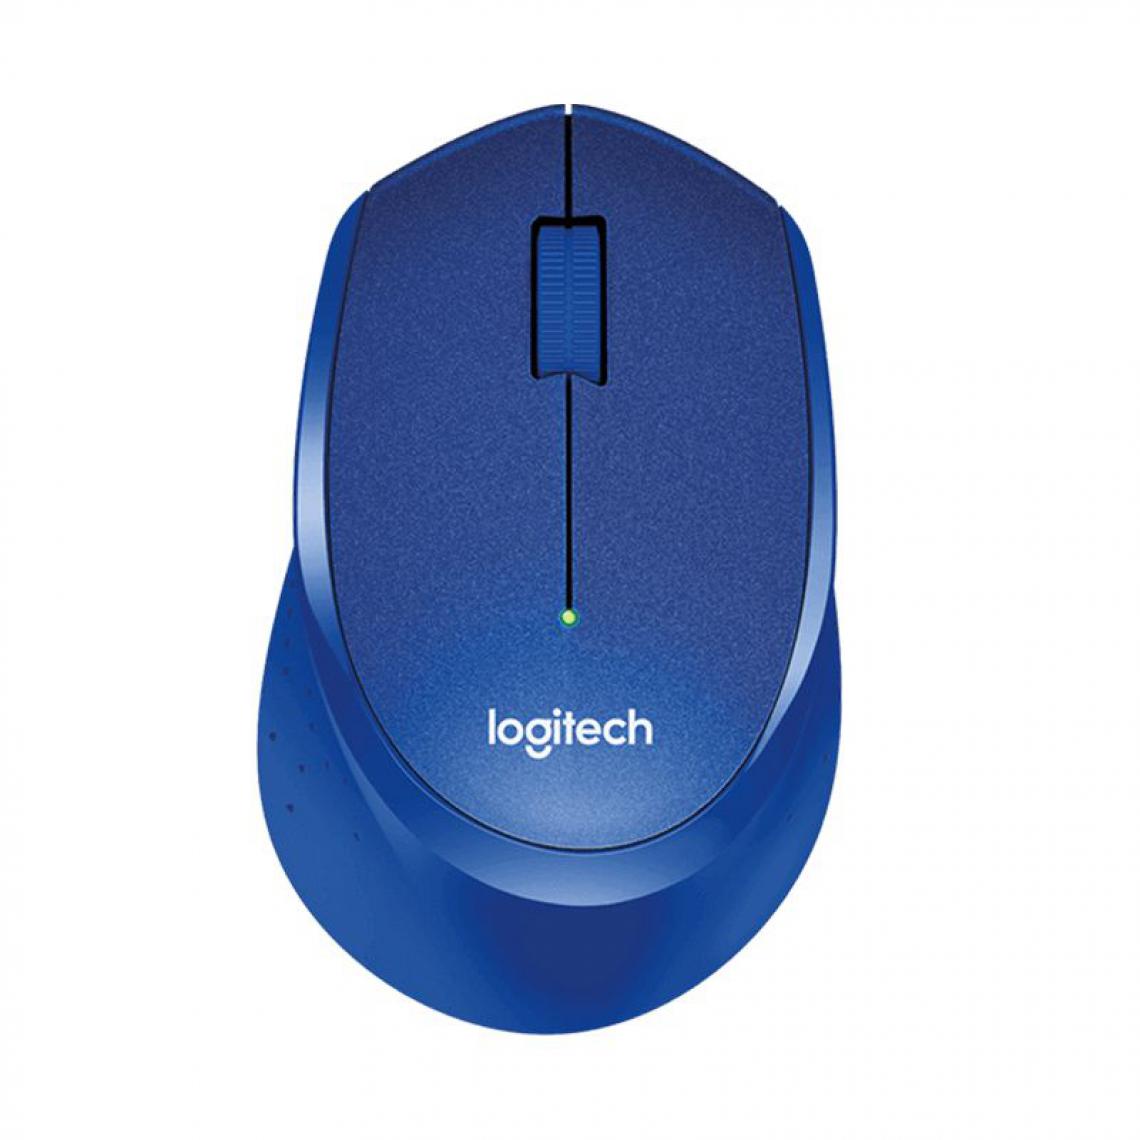 Generic - Souris optique  Logitech M330 sans fil ,silencieuse, 2.4GHz, 1000DPI  pour PC/ordinateur portable  10.5 * 0.7 * 4 cm - Bleu  - Souris